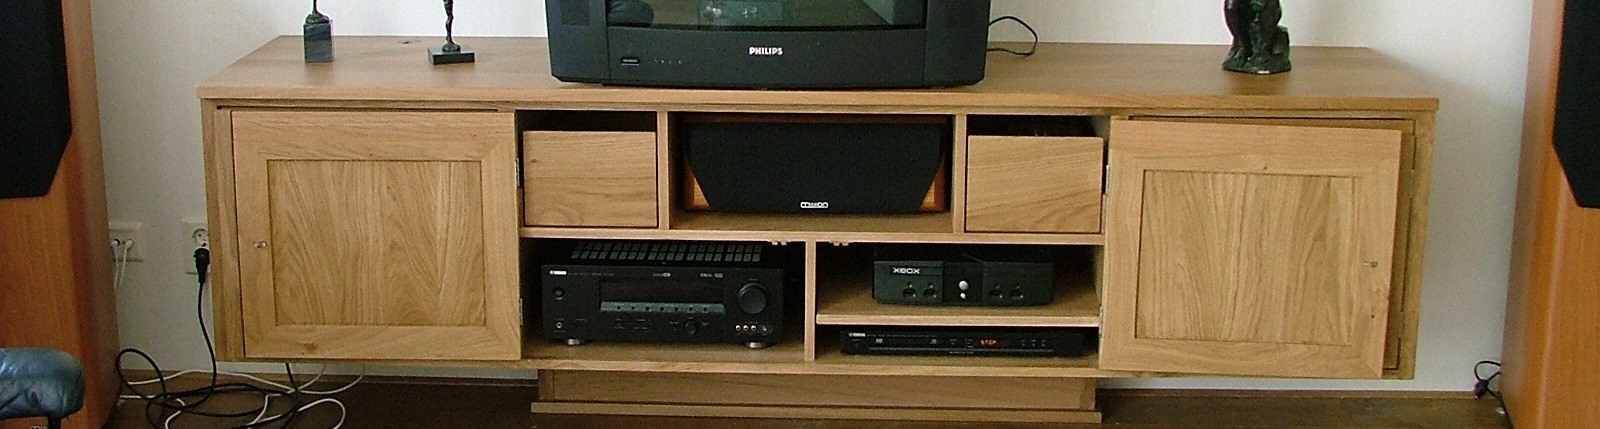 huisvesting voor alle video en audio apparatuur onder hand bereik Video meubel uit massief eiken